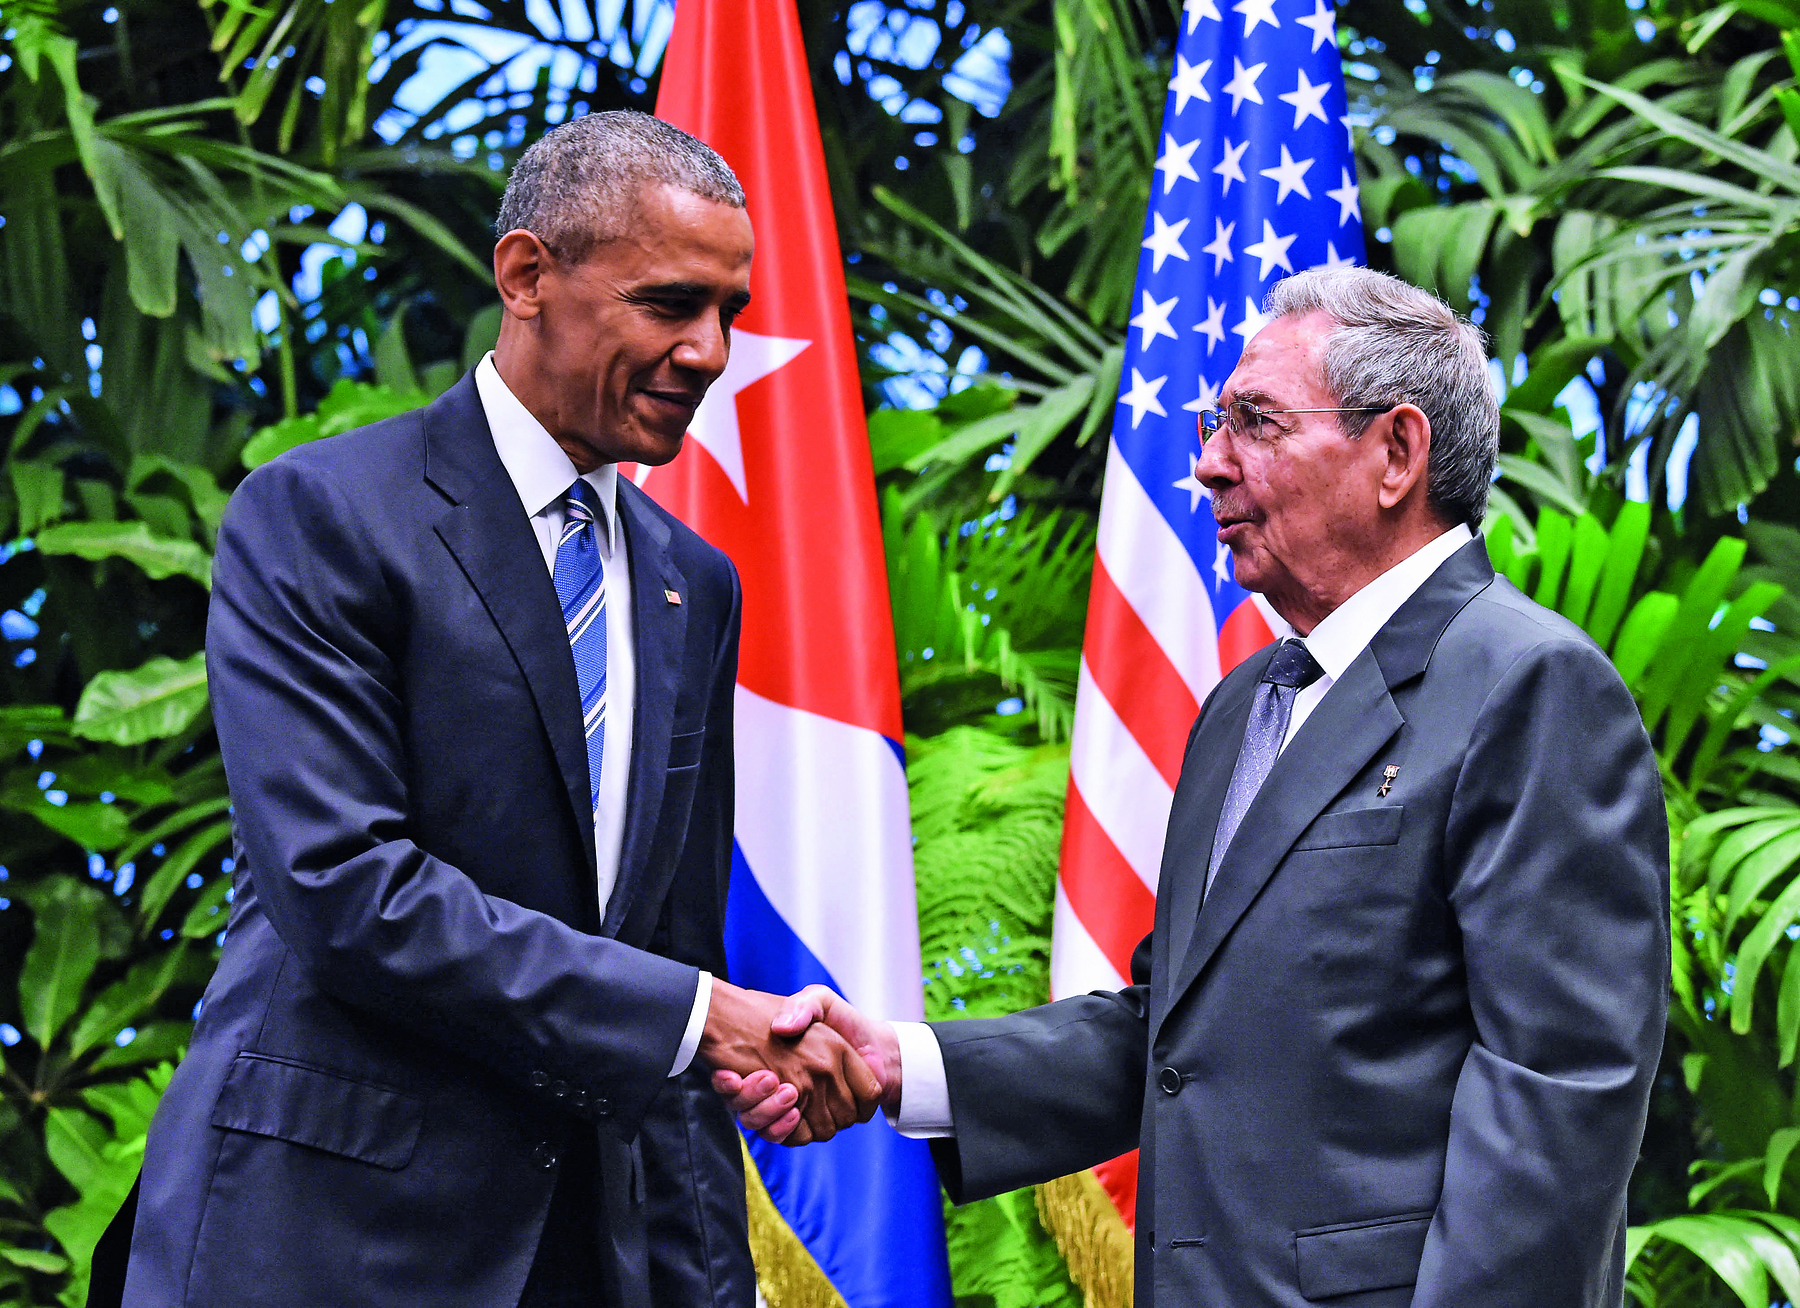 Fotografia. Dois homens se cumprimentando com um aperto de mãos. O da esquerda, tem cabelos curtos e grisalhos, veste um terno escuro e uma gravata azul. O da direita, tem cabelos curtos, lisos e grisalhos, e veste um terno cinza. Em segundo plano, duas bandeiras, uma de Cuba e uma dos Estados Unidos.